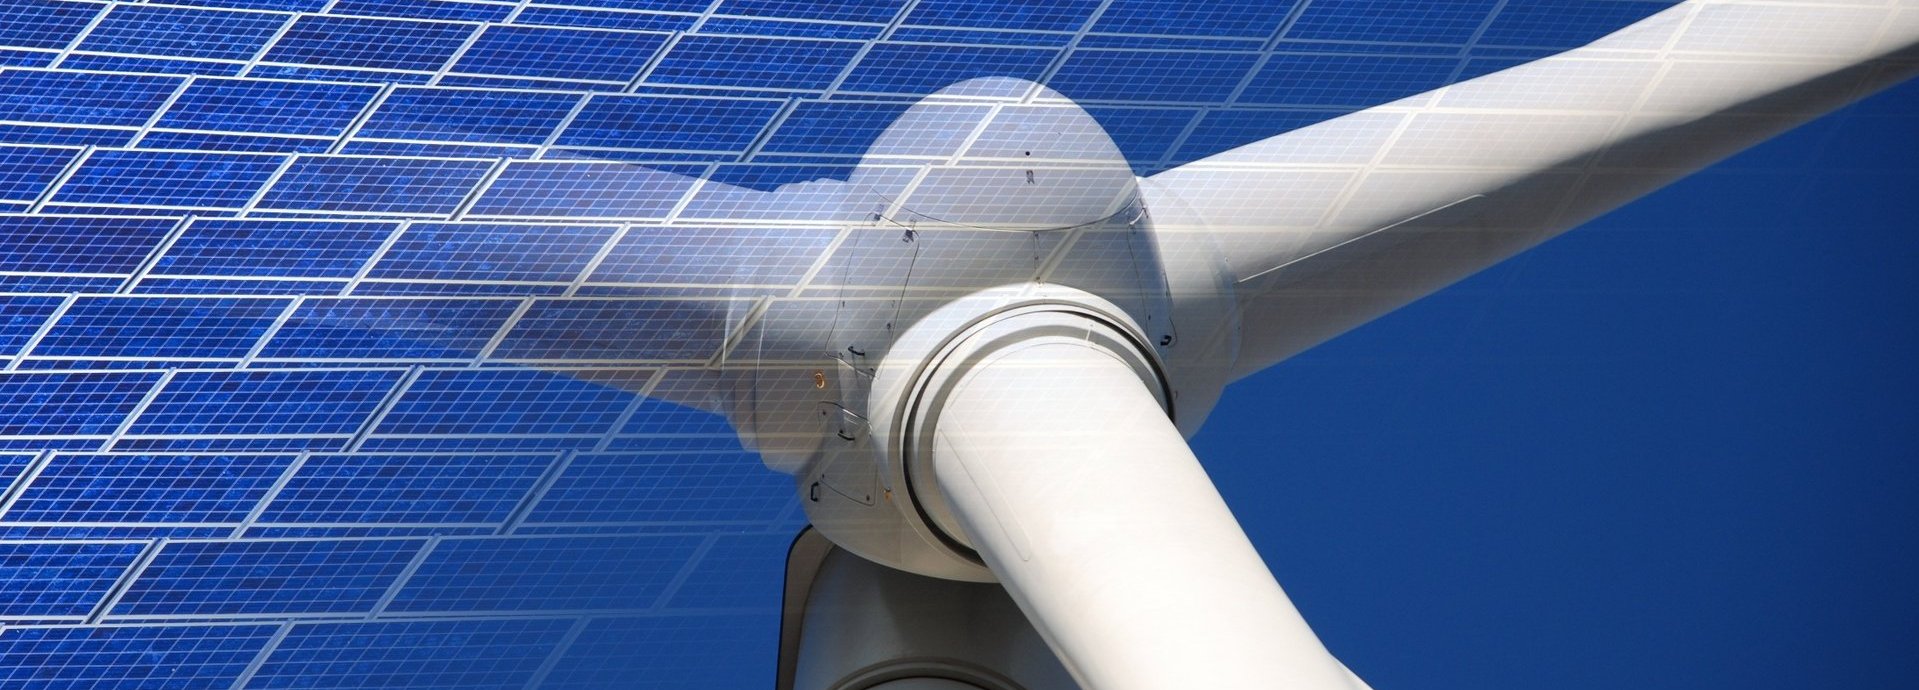 Solarkollektoren eingeblendet vor Nahaufnahme von Windrad mit blauem Hintergrund